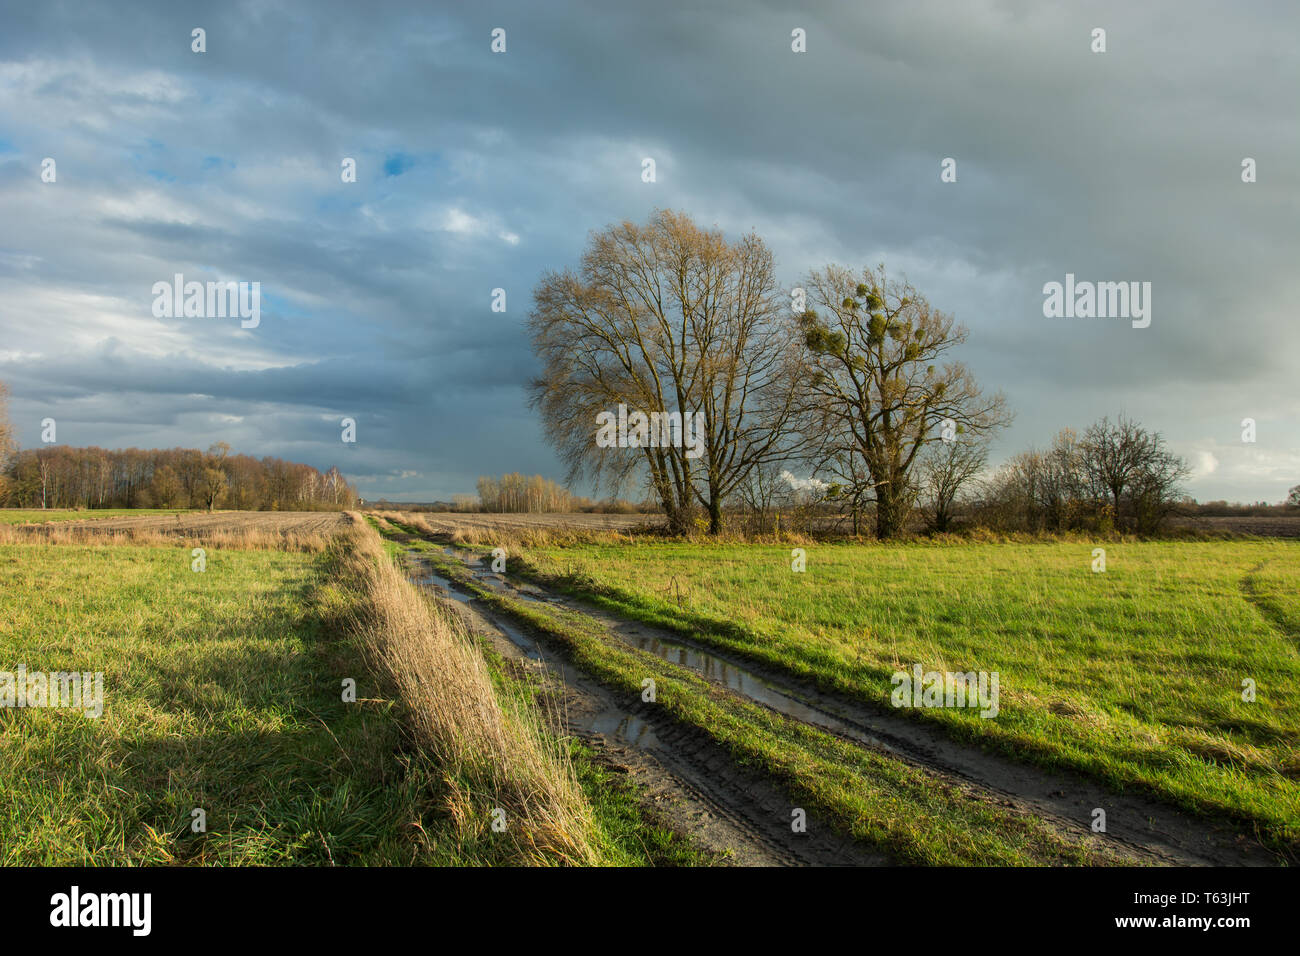 Spuren der Räder und Pfützen auf einem Feldweg durch eine grüne Wiese, große Bäume ohne Blätter und regnerischen Wolken im Himmel Stockfoto